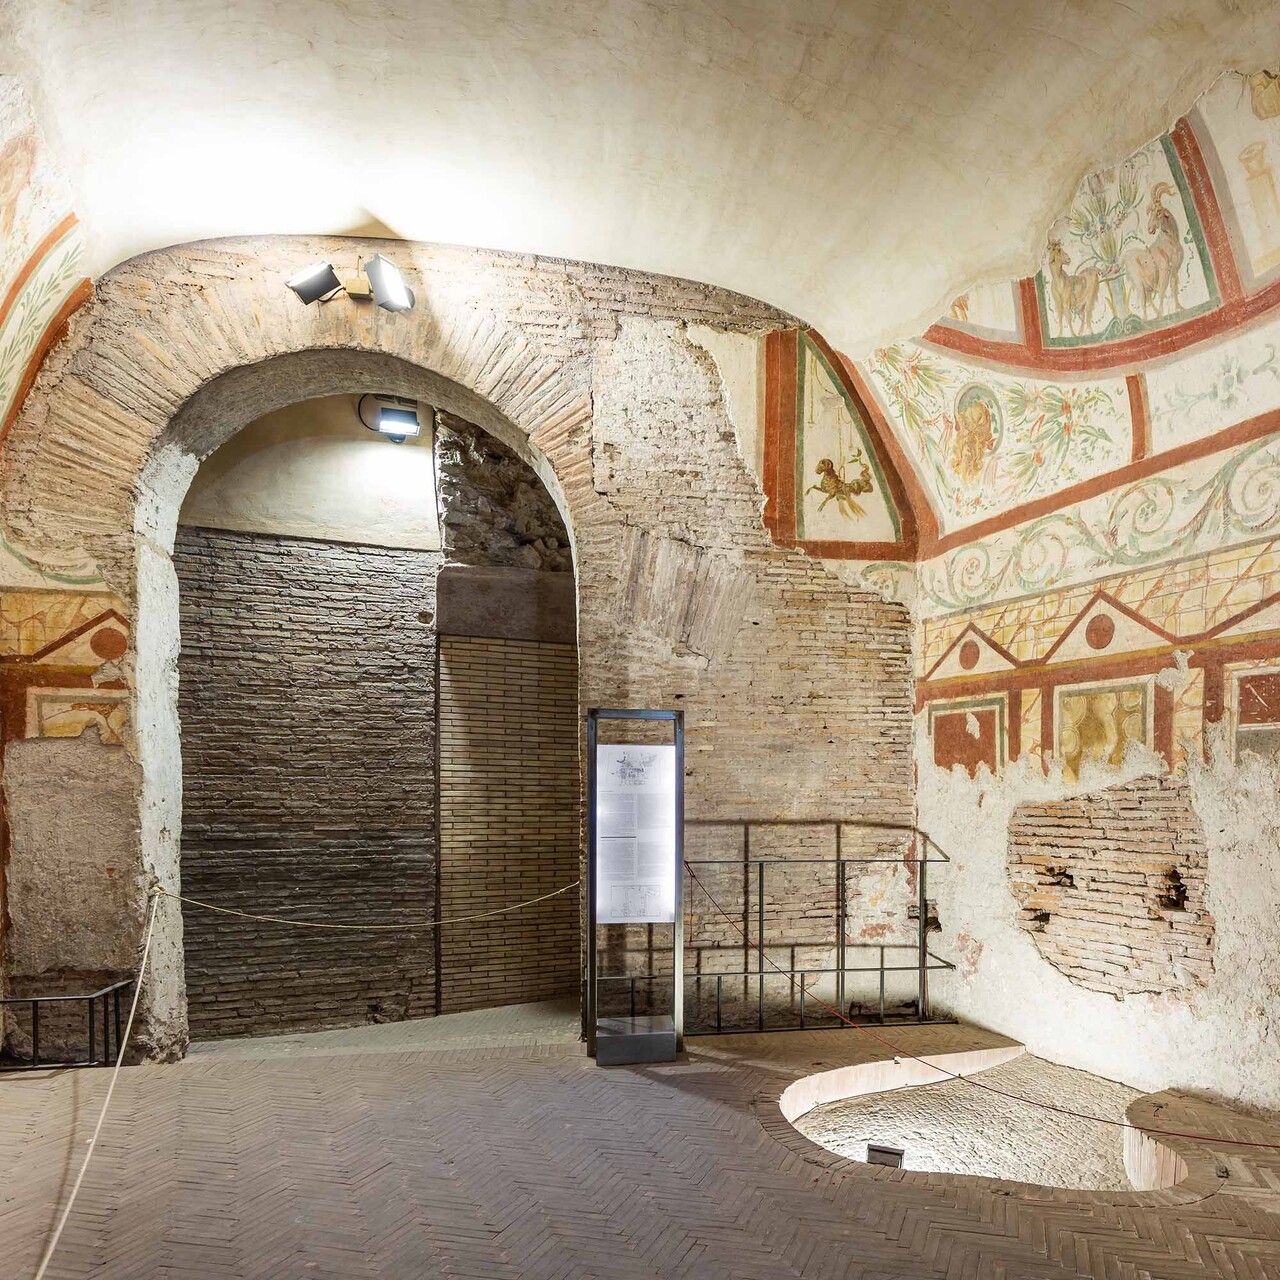 ArcheoVerso: سيستخدم المشروع الثقافي Case Romane del Celio ، وهو مجمع سكني روماني قديم ، لا يزال غير معروف حتى لو كان خلف الكولوسيوم ، للمرحلة التجريبية التي تستغرق عامين